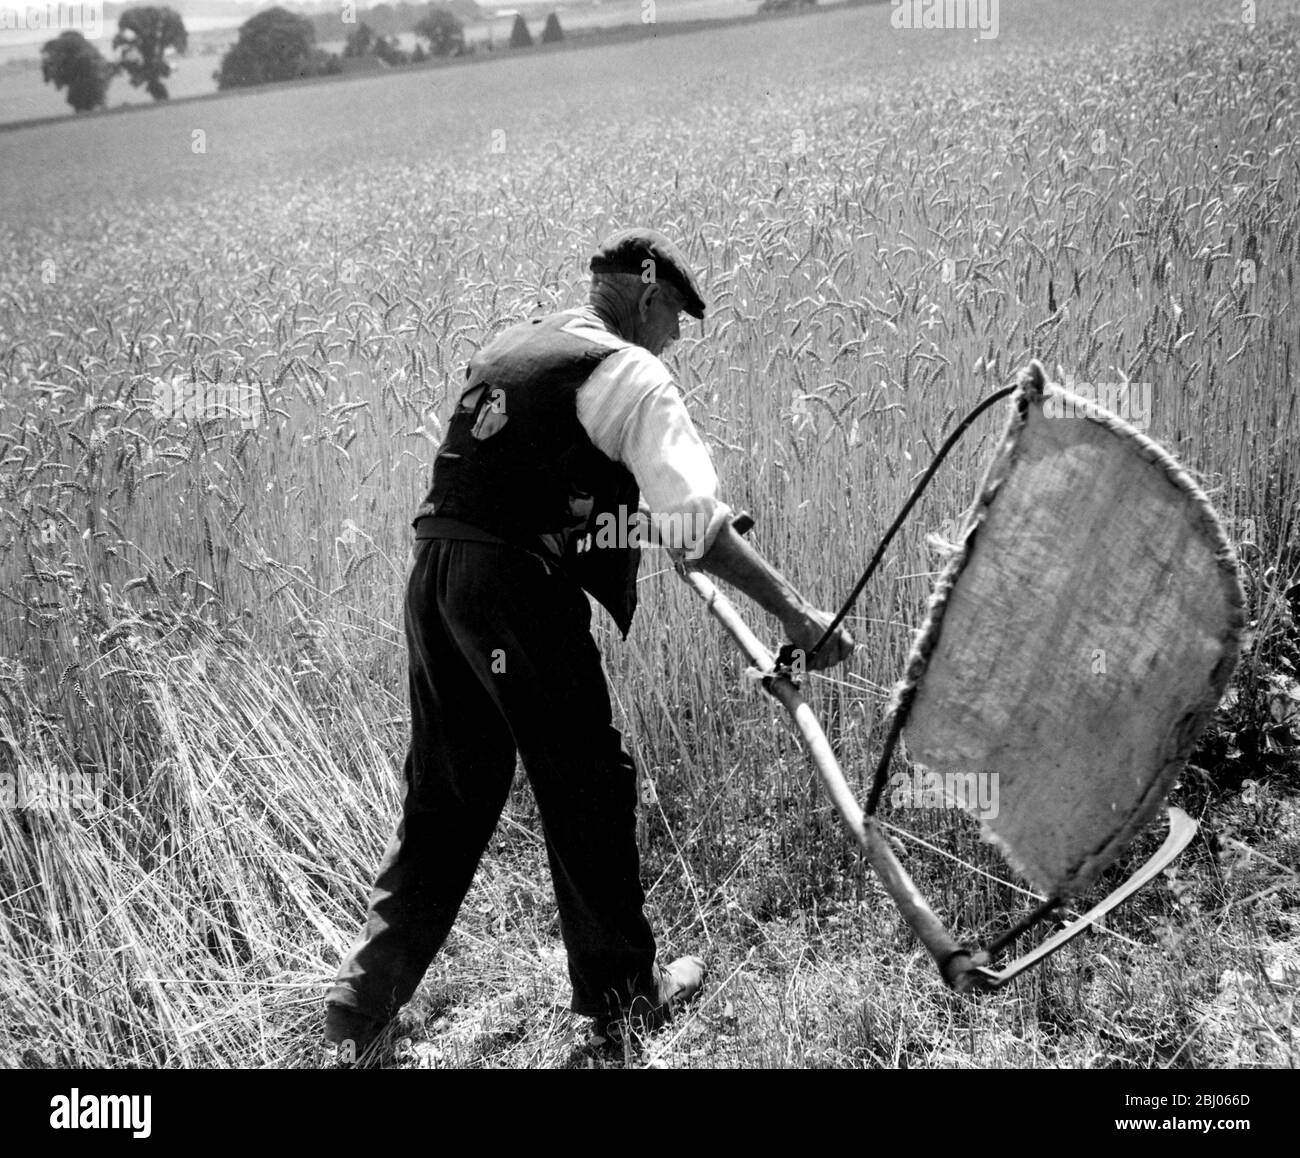 El hombre cortando maíz con una escotha - cosechando a mano. La imagen muestra a Fred Goldup, de 72 años, trabajando en una granja cerca de Shoreham, Kent, haciendo paso con su bender casero y el scythe para que el pañal haga un comienzo en este campo de trigo. - 5 de agosto de 1947 Foto de stock